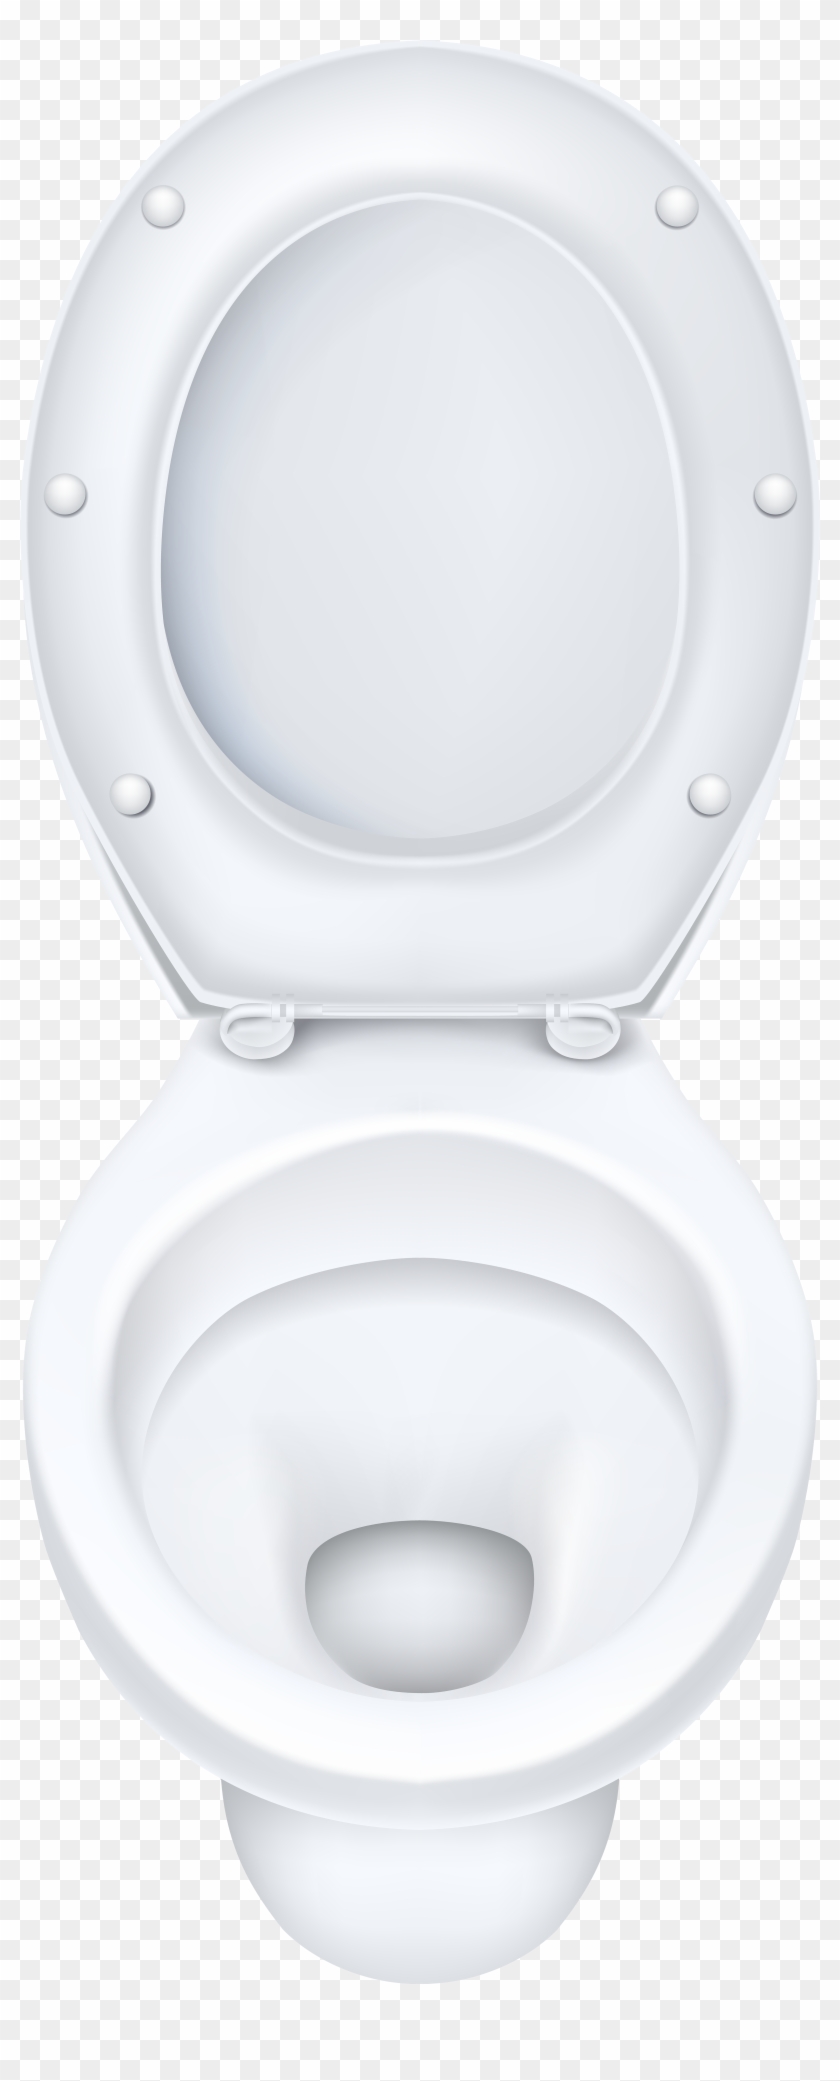 White Toilet Bowl Png Clip Art - Toilet Seat Transparent Png #276138